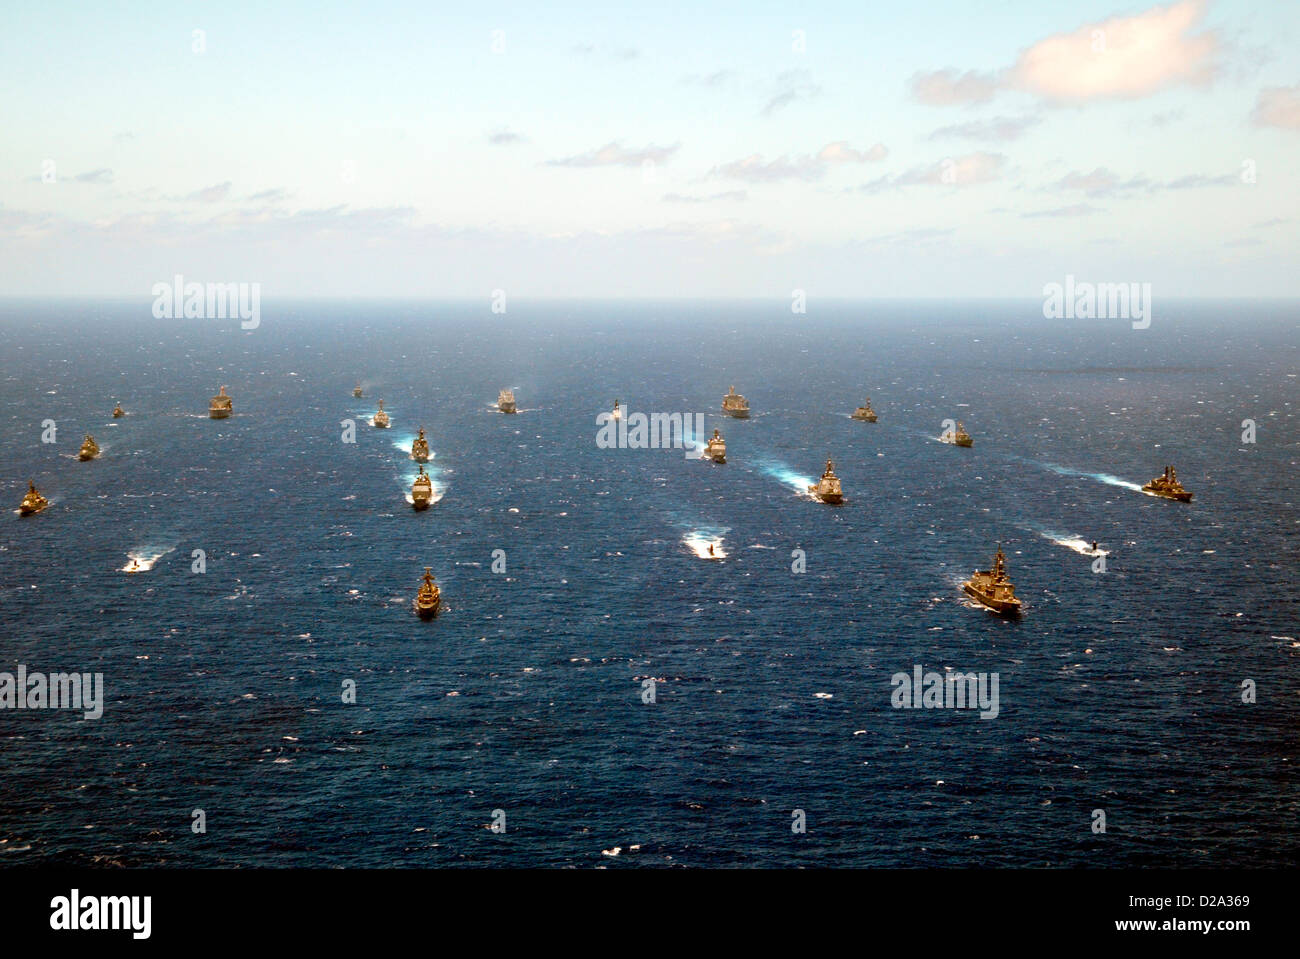 Hawaii: Los buques de guerra de varias naciones de fuerzas navales de EE.UU. Otros siete países europeos Pacific Rim están participando en operaciones militares Foto de stock